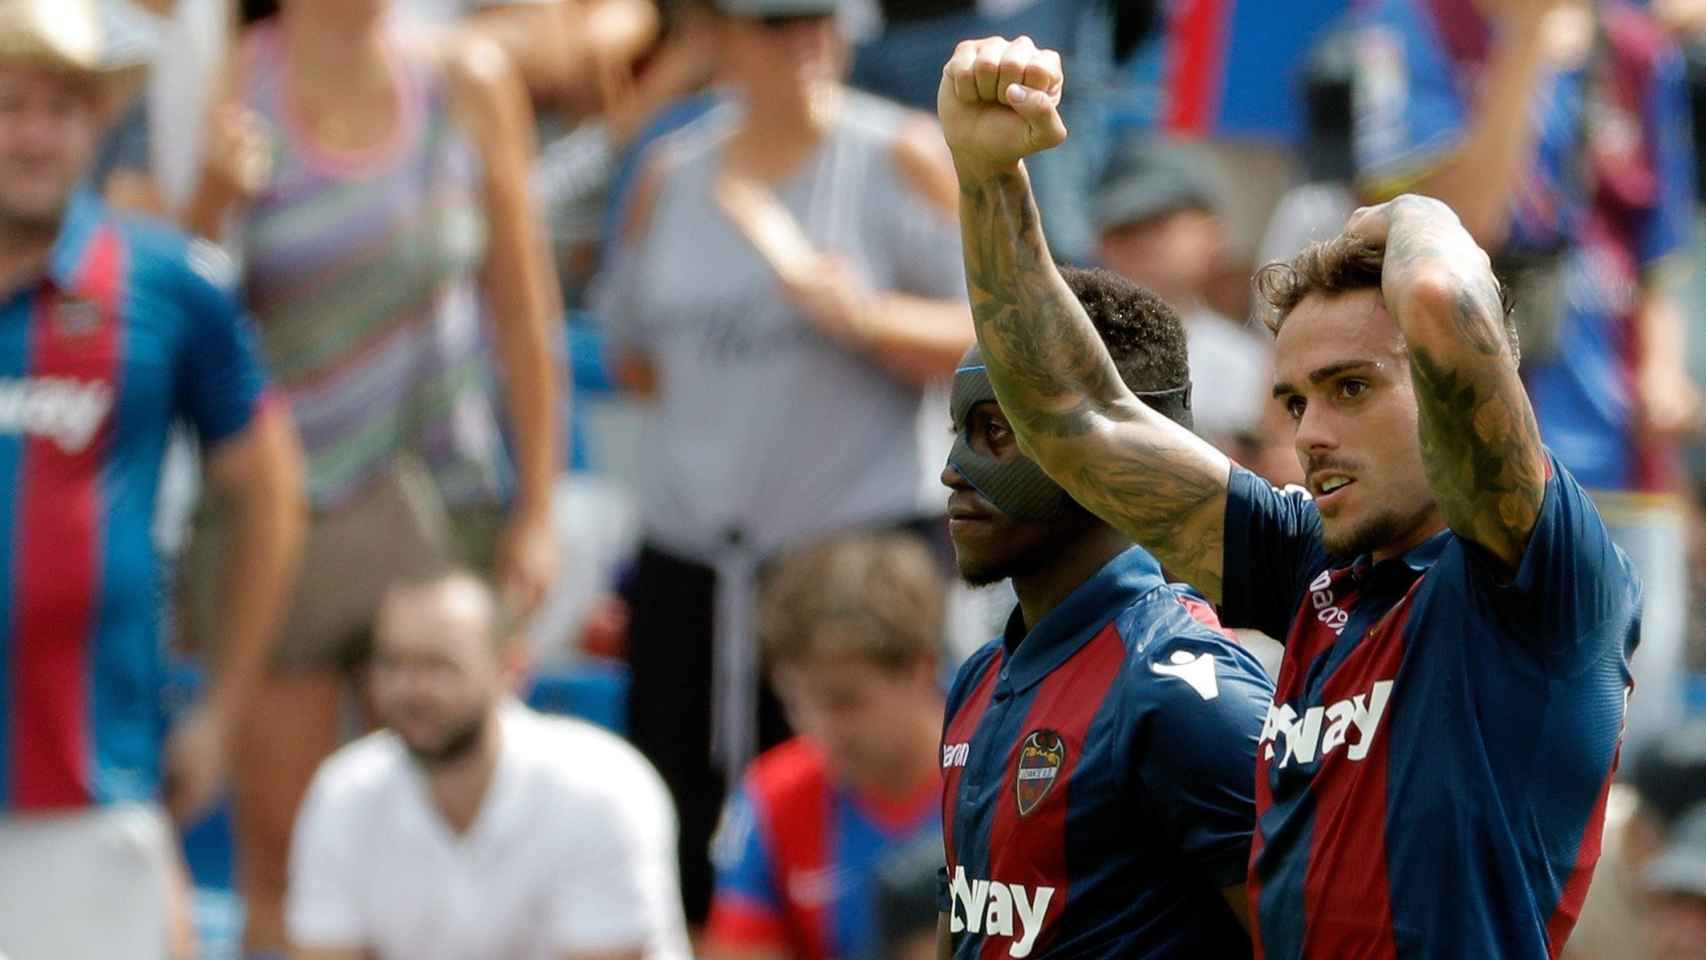 Roger celebra su gol en el Levante - Valencia junto a Emmanuel Boateng